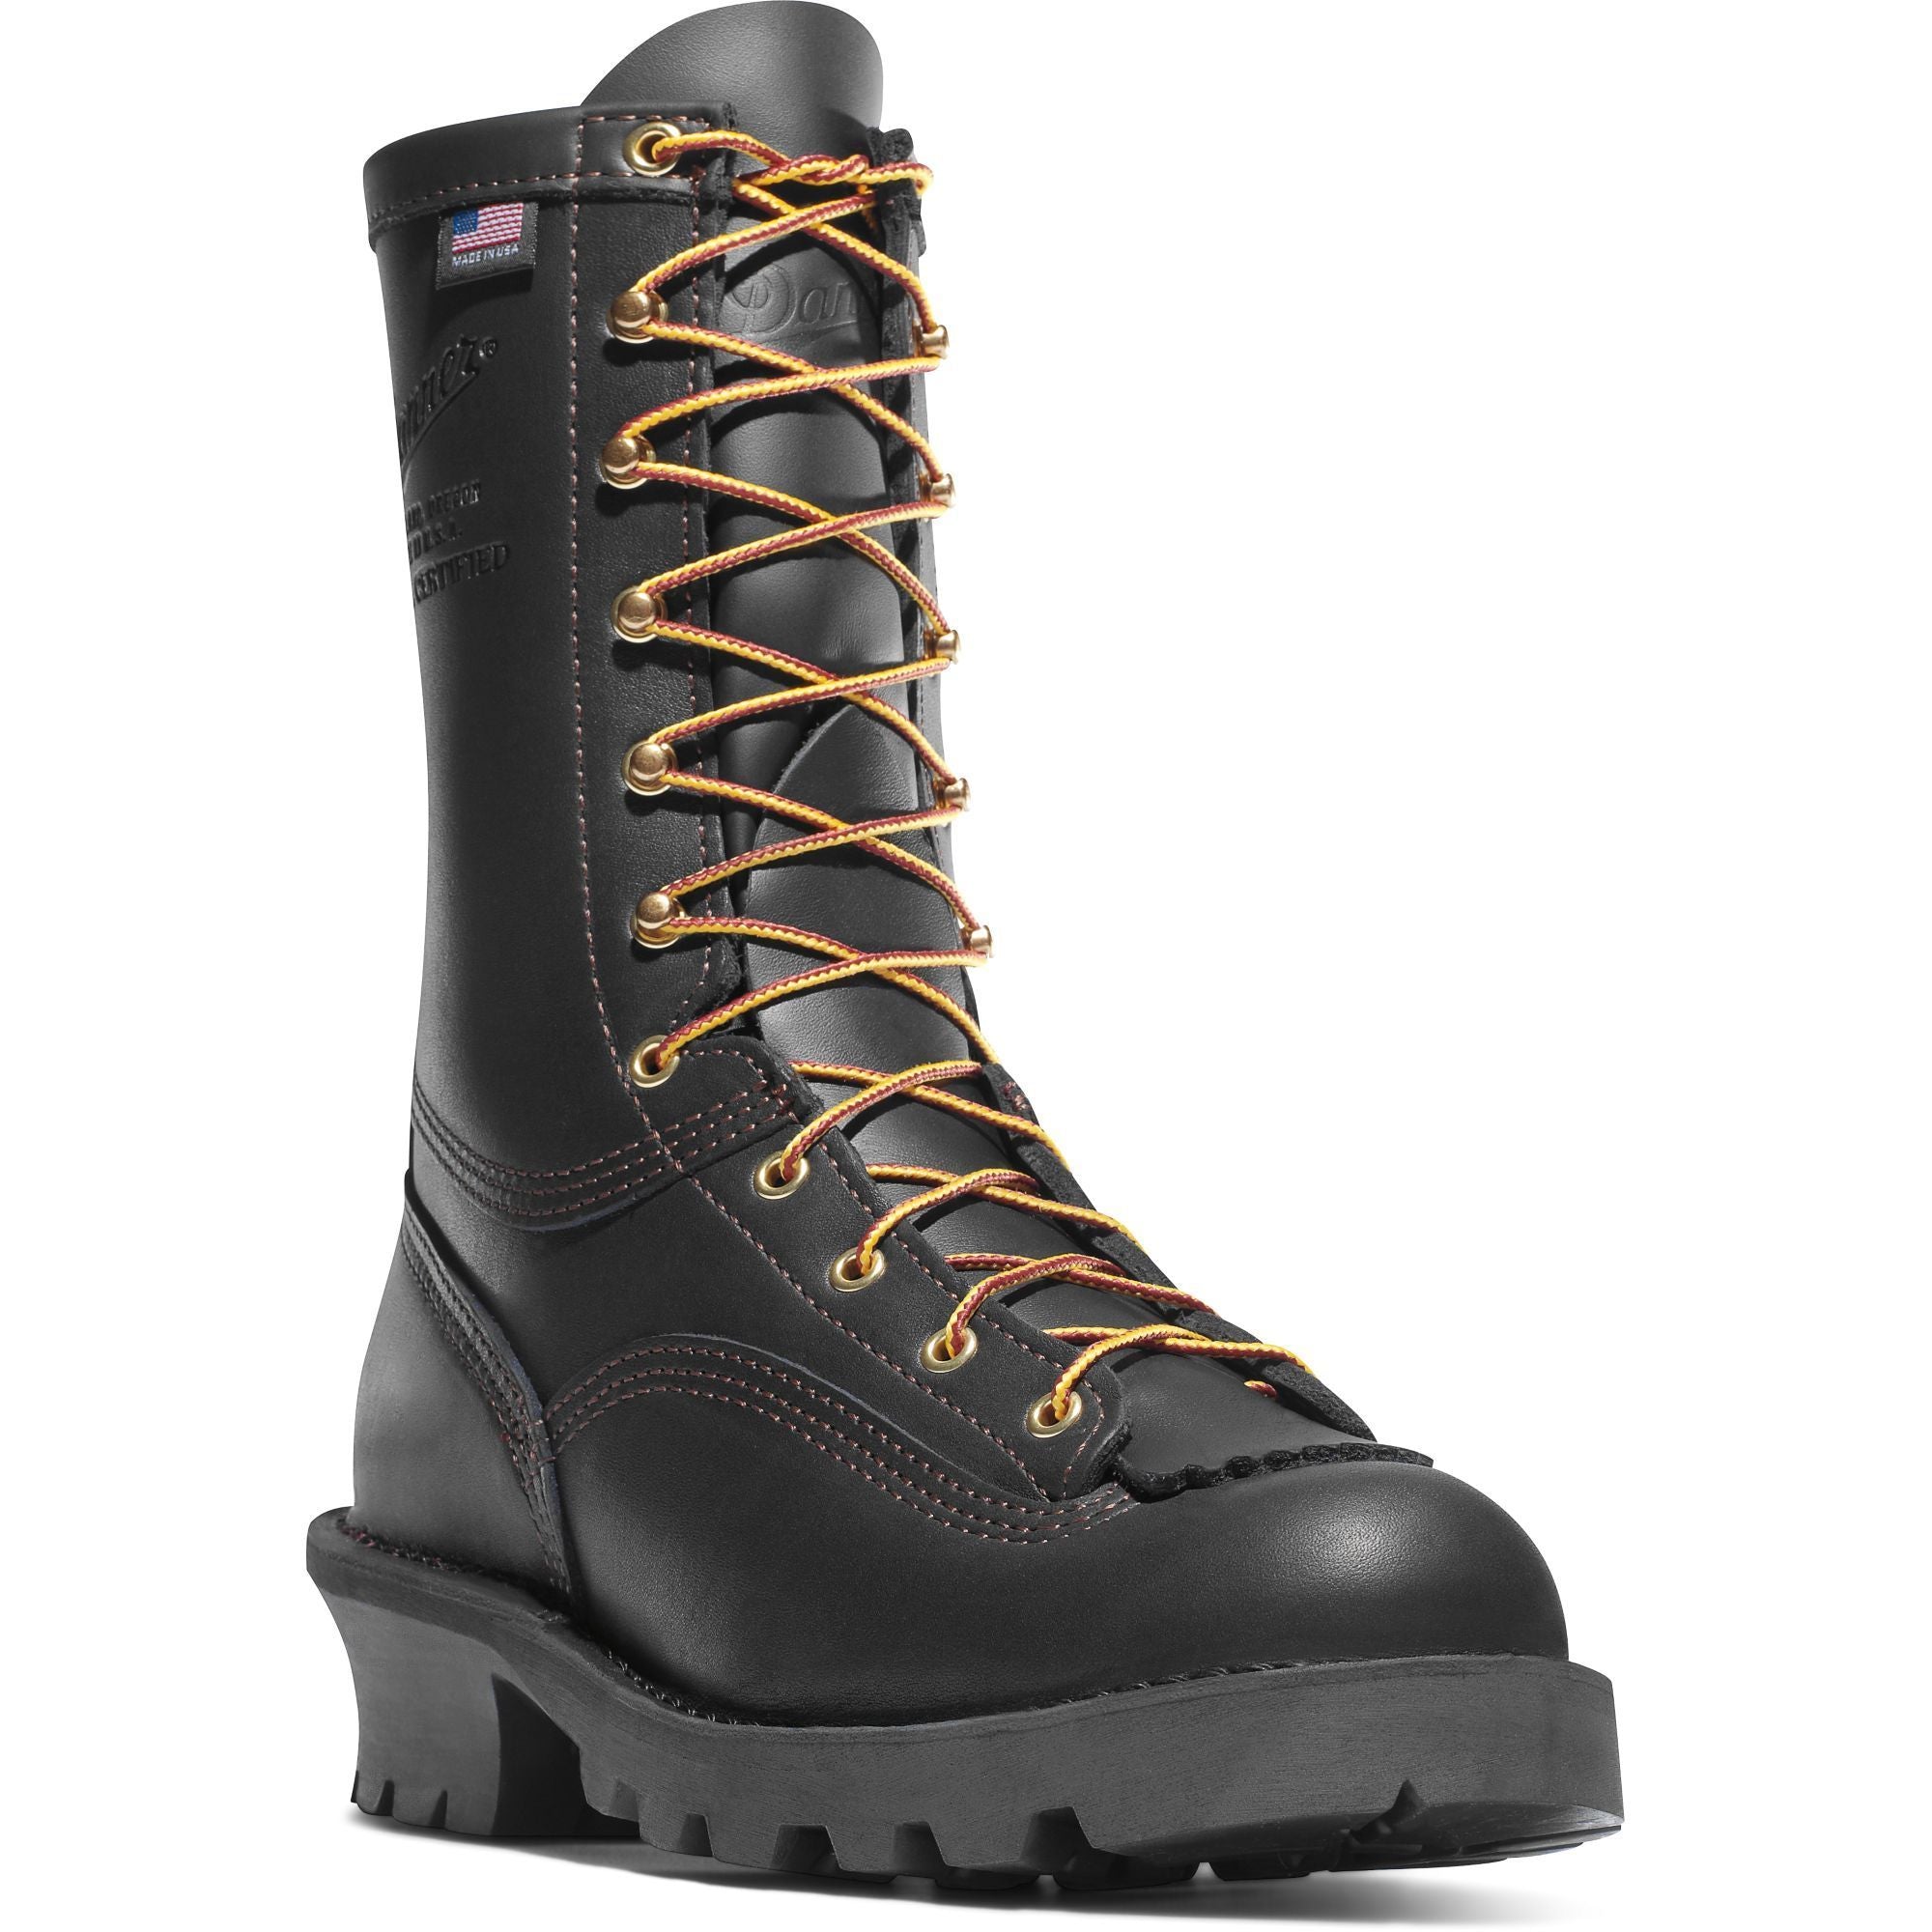 Danner Men's USA Made 8" Wildland Tactical Firefighter Boot Black 18050  - Overlook Boots